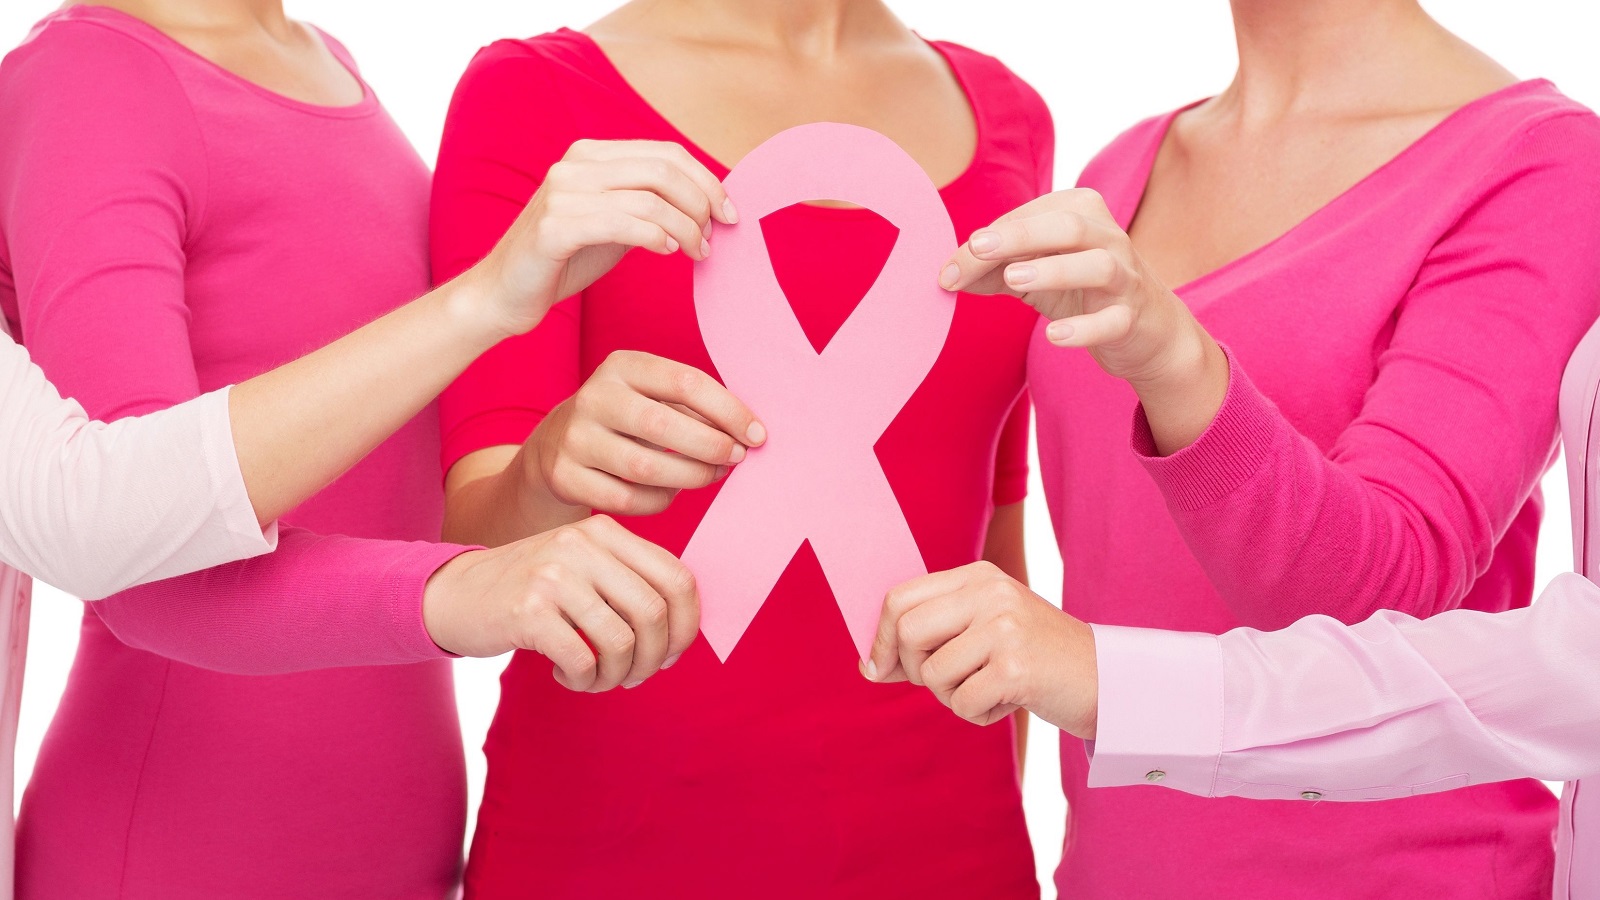 أكبر حملة وطنية لمكافحة سرطان الثدي: "ما تترددي"